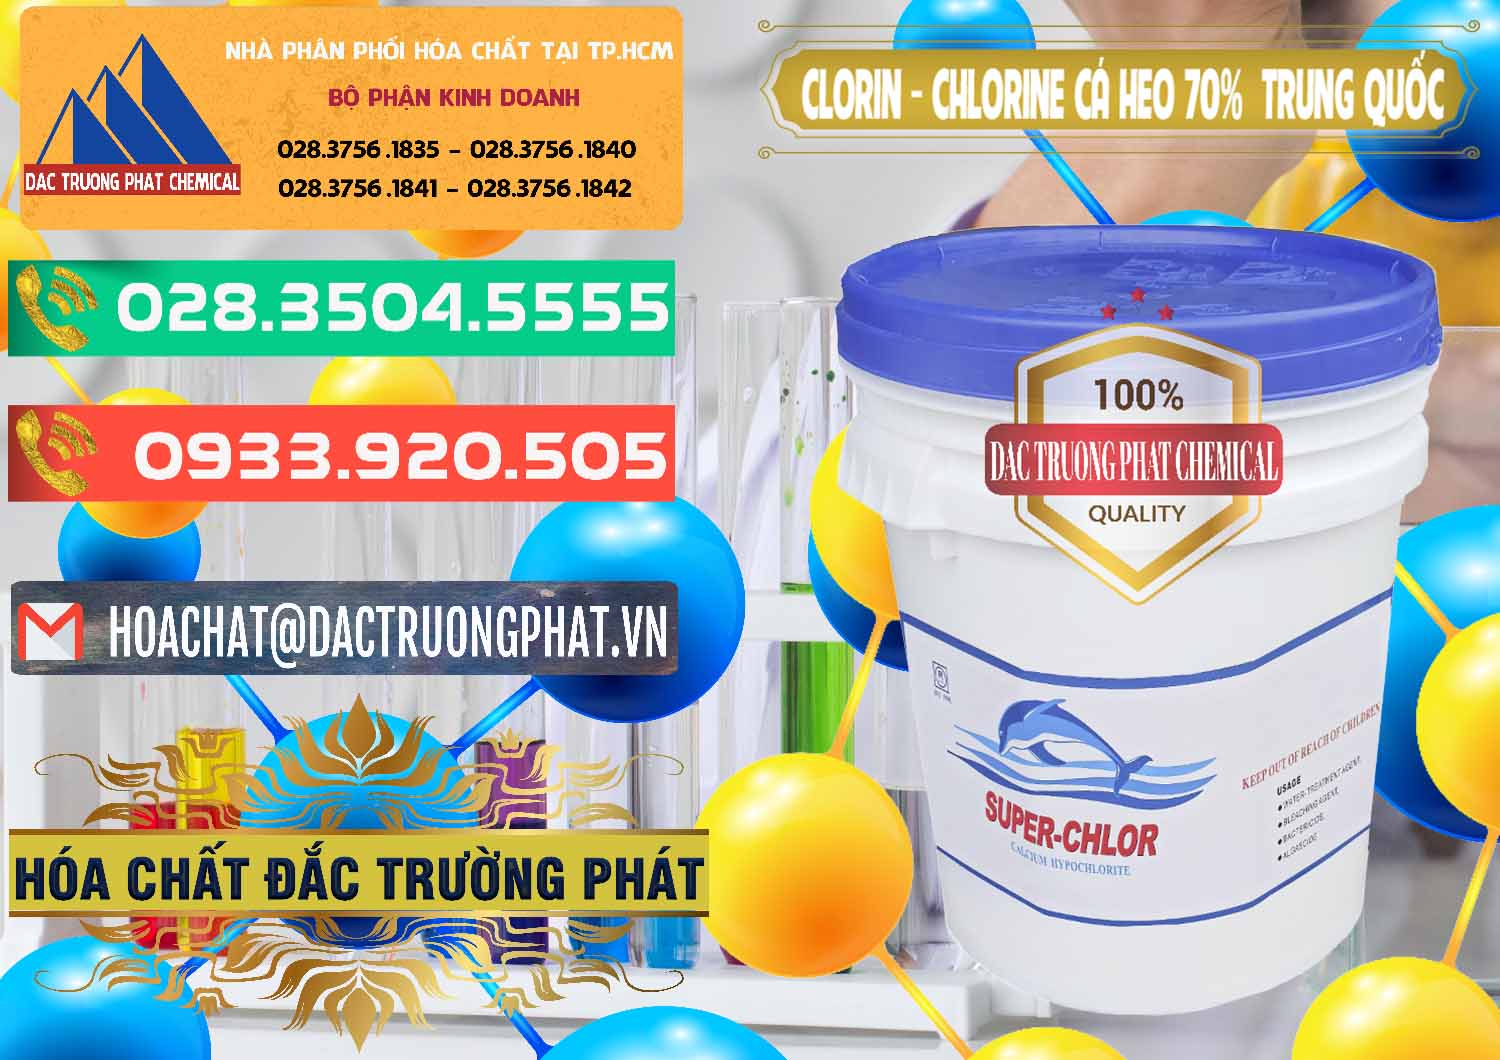 Nơi chuyên cung cấp & bán Clorin - Chlorine Cá Heo 70% Super Chlor Nắp Xanh Trung Quốc China - 0209 - Bán và phân phối hóa chất tại TP.HCM - congtyhoachat.com.vn